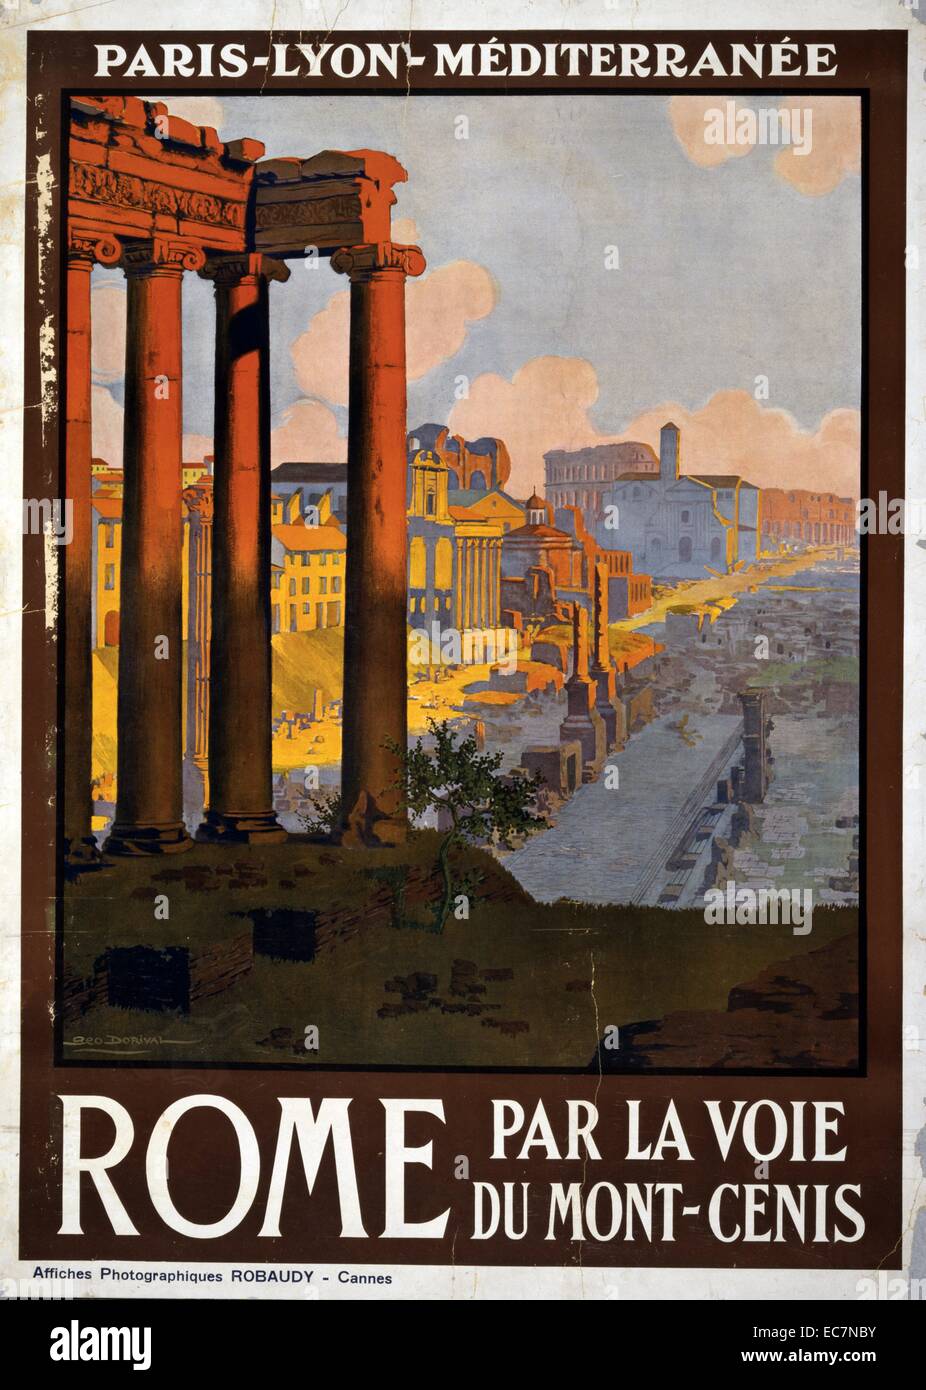 Rome par la voie du Mont-Cenis. Poster showing the Roman Forum at dawn. Stock Photo